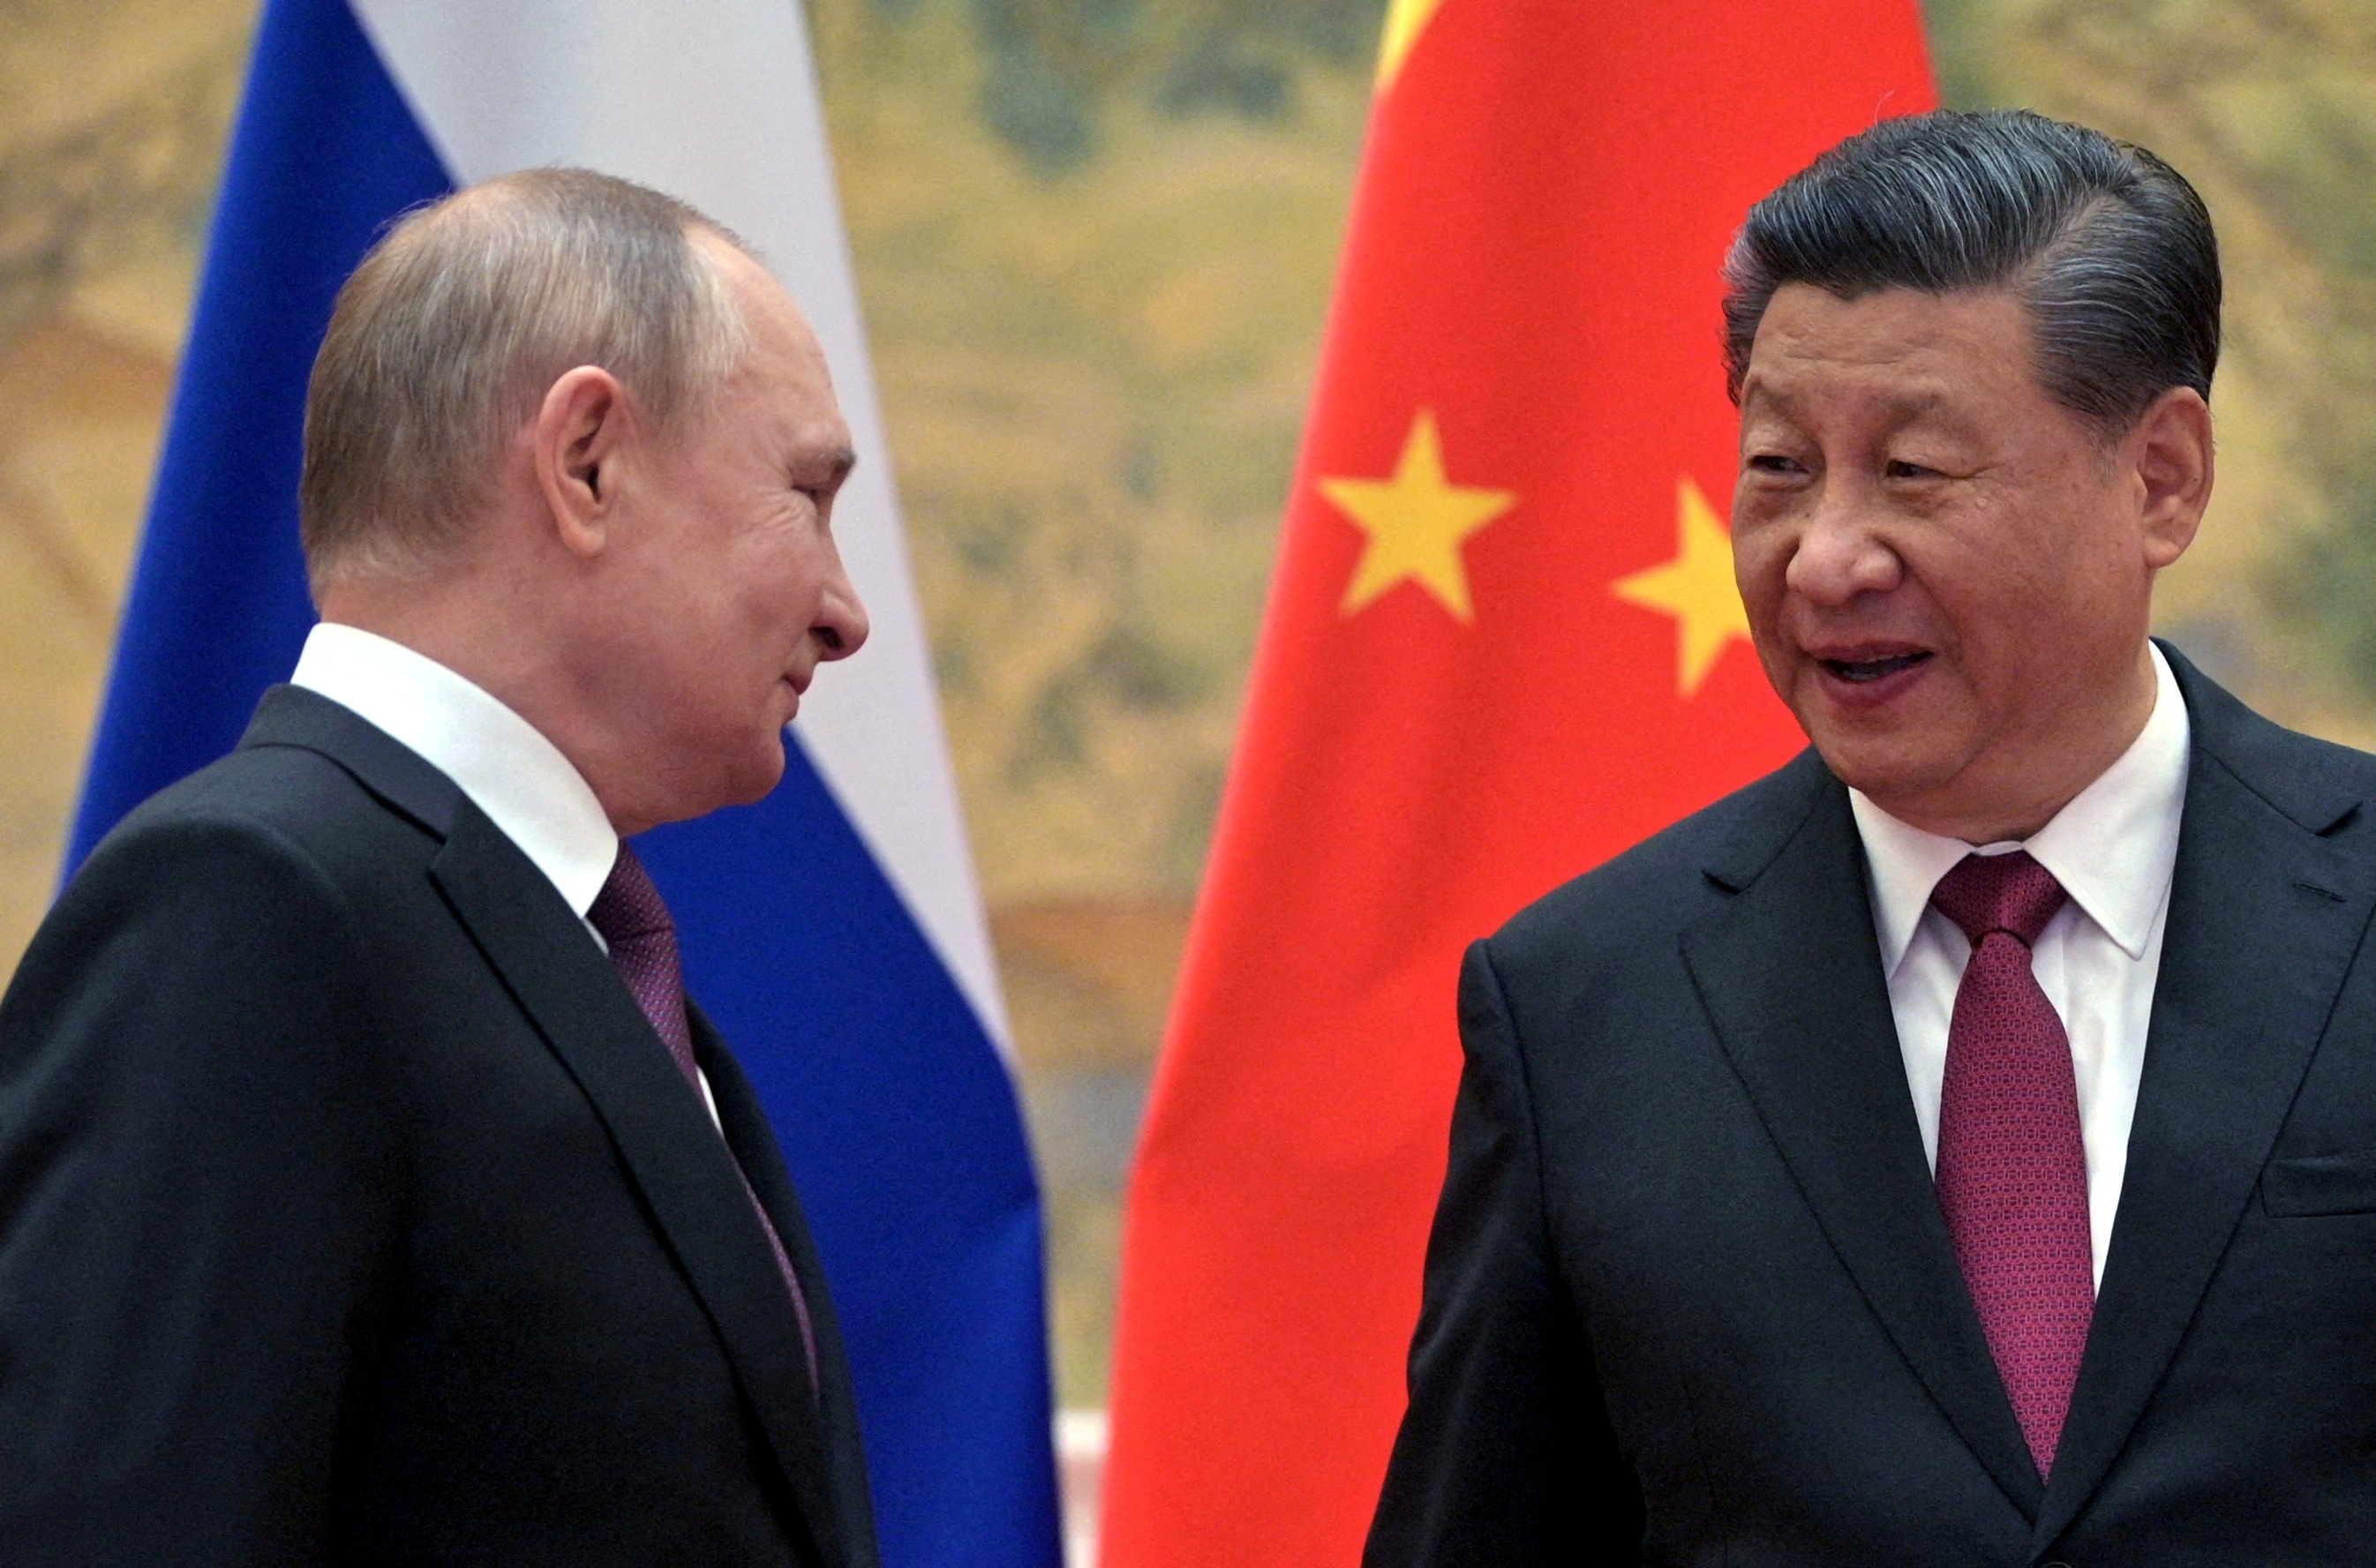 El presidente ruso Vladimir Putin y el chino Xi Jinping durante un encuentro antes de la guerra, cuando declararon una relación “sin límites” entre los dos países (Sputnik/Aleksey Druzhinin/Kremlin via REUTERS)